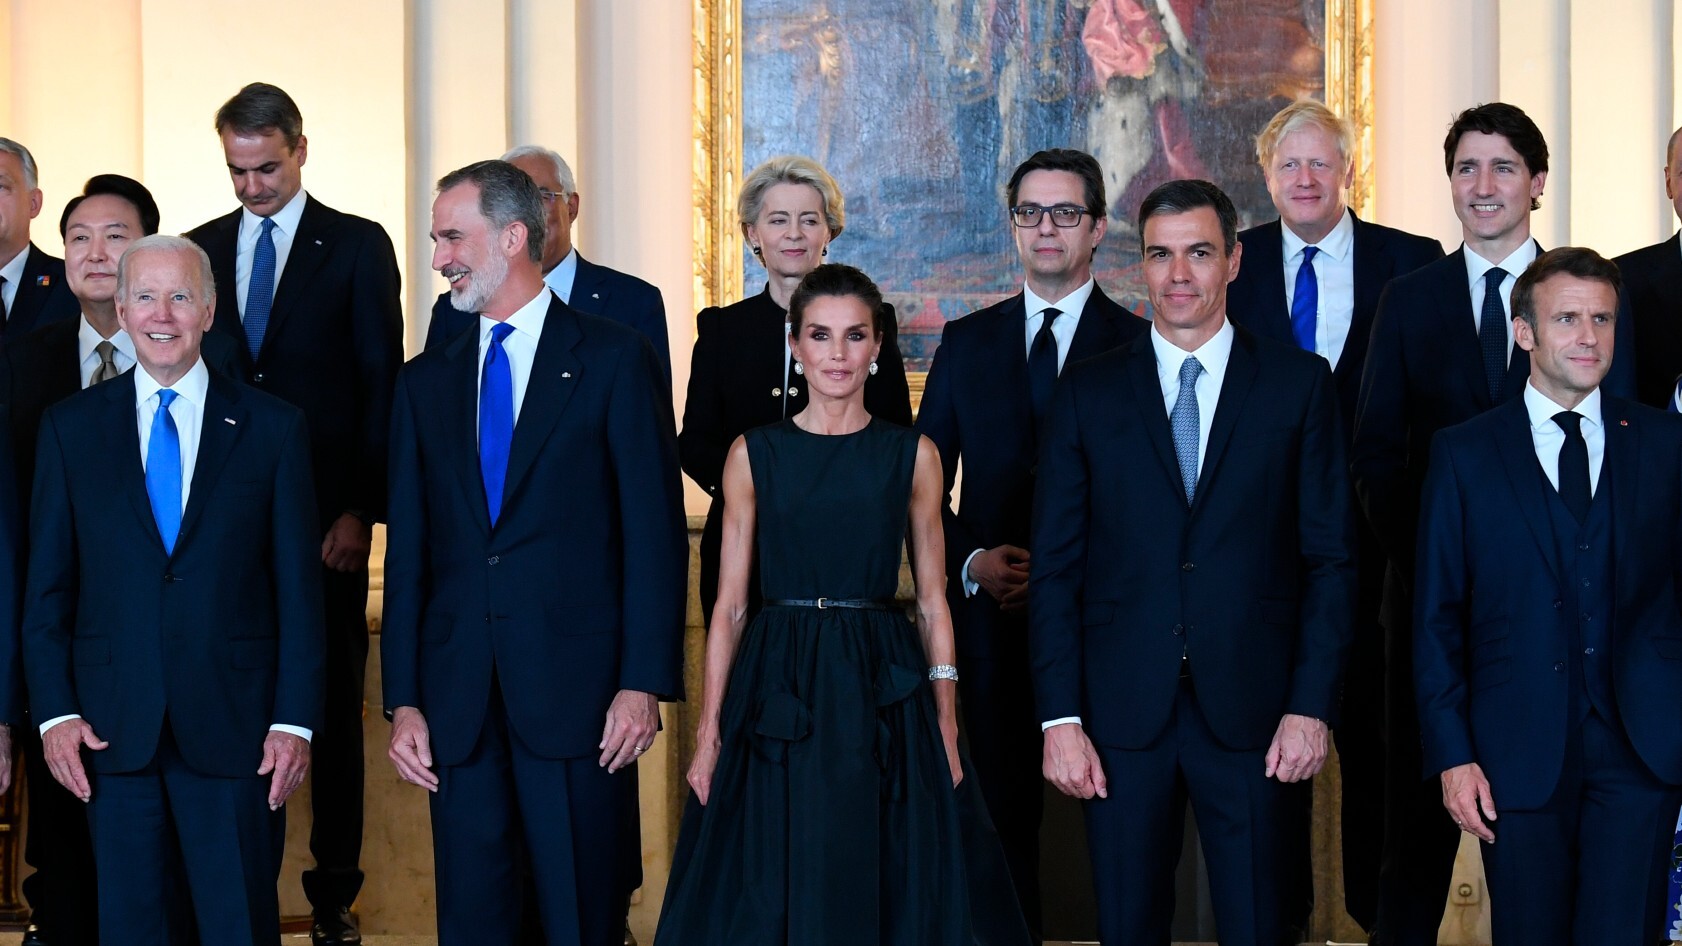 Os reis recebem os líderes da OTAN em um jantar oficial no Palácio Real